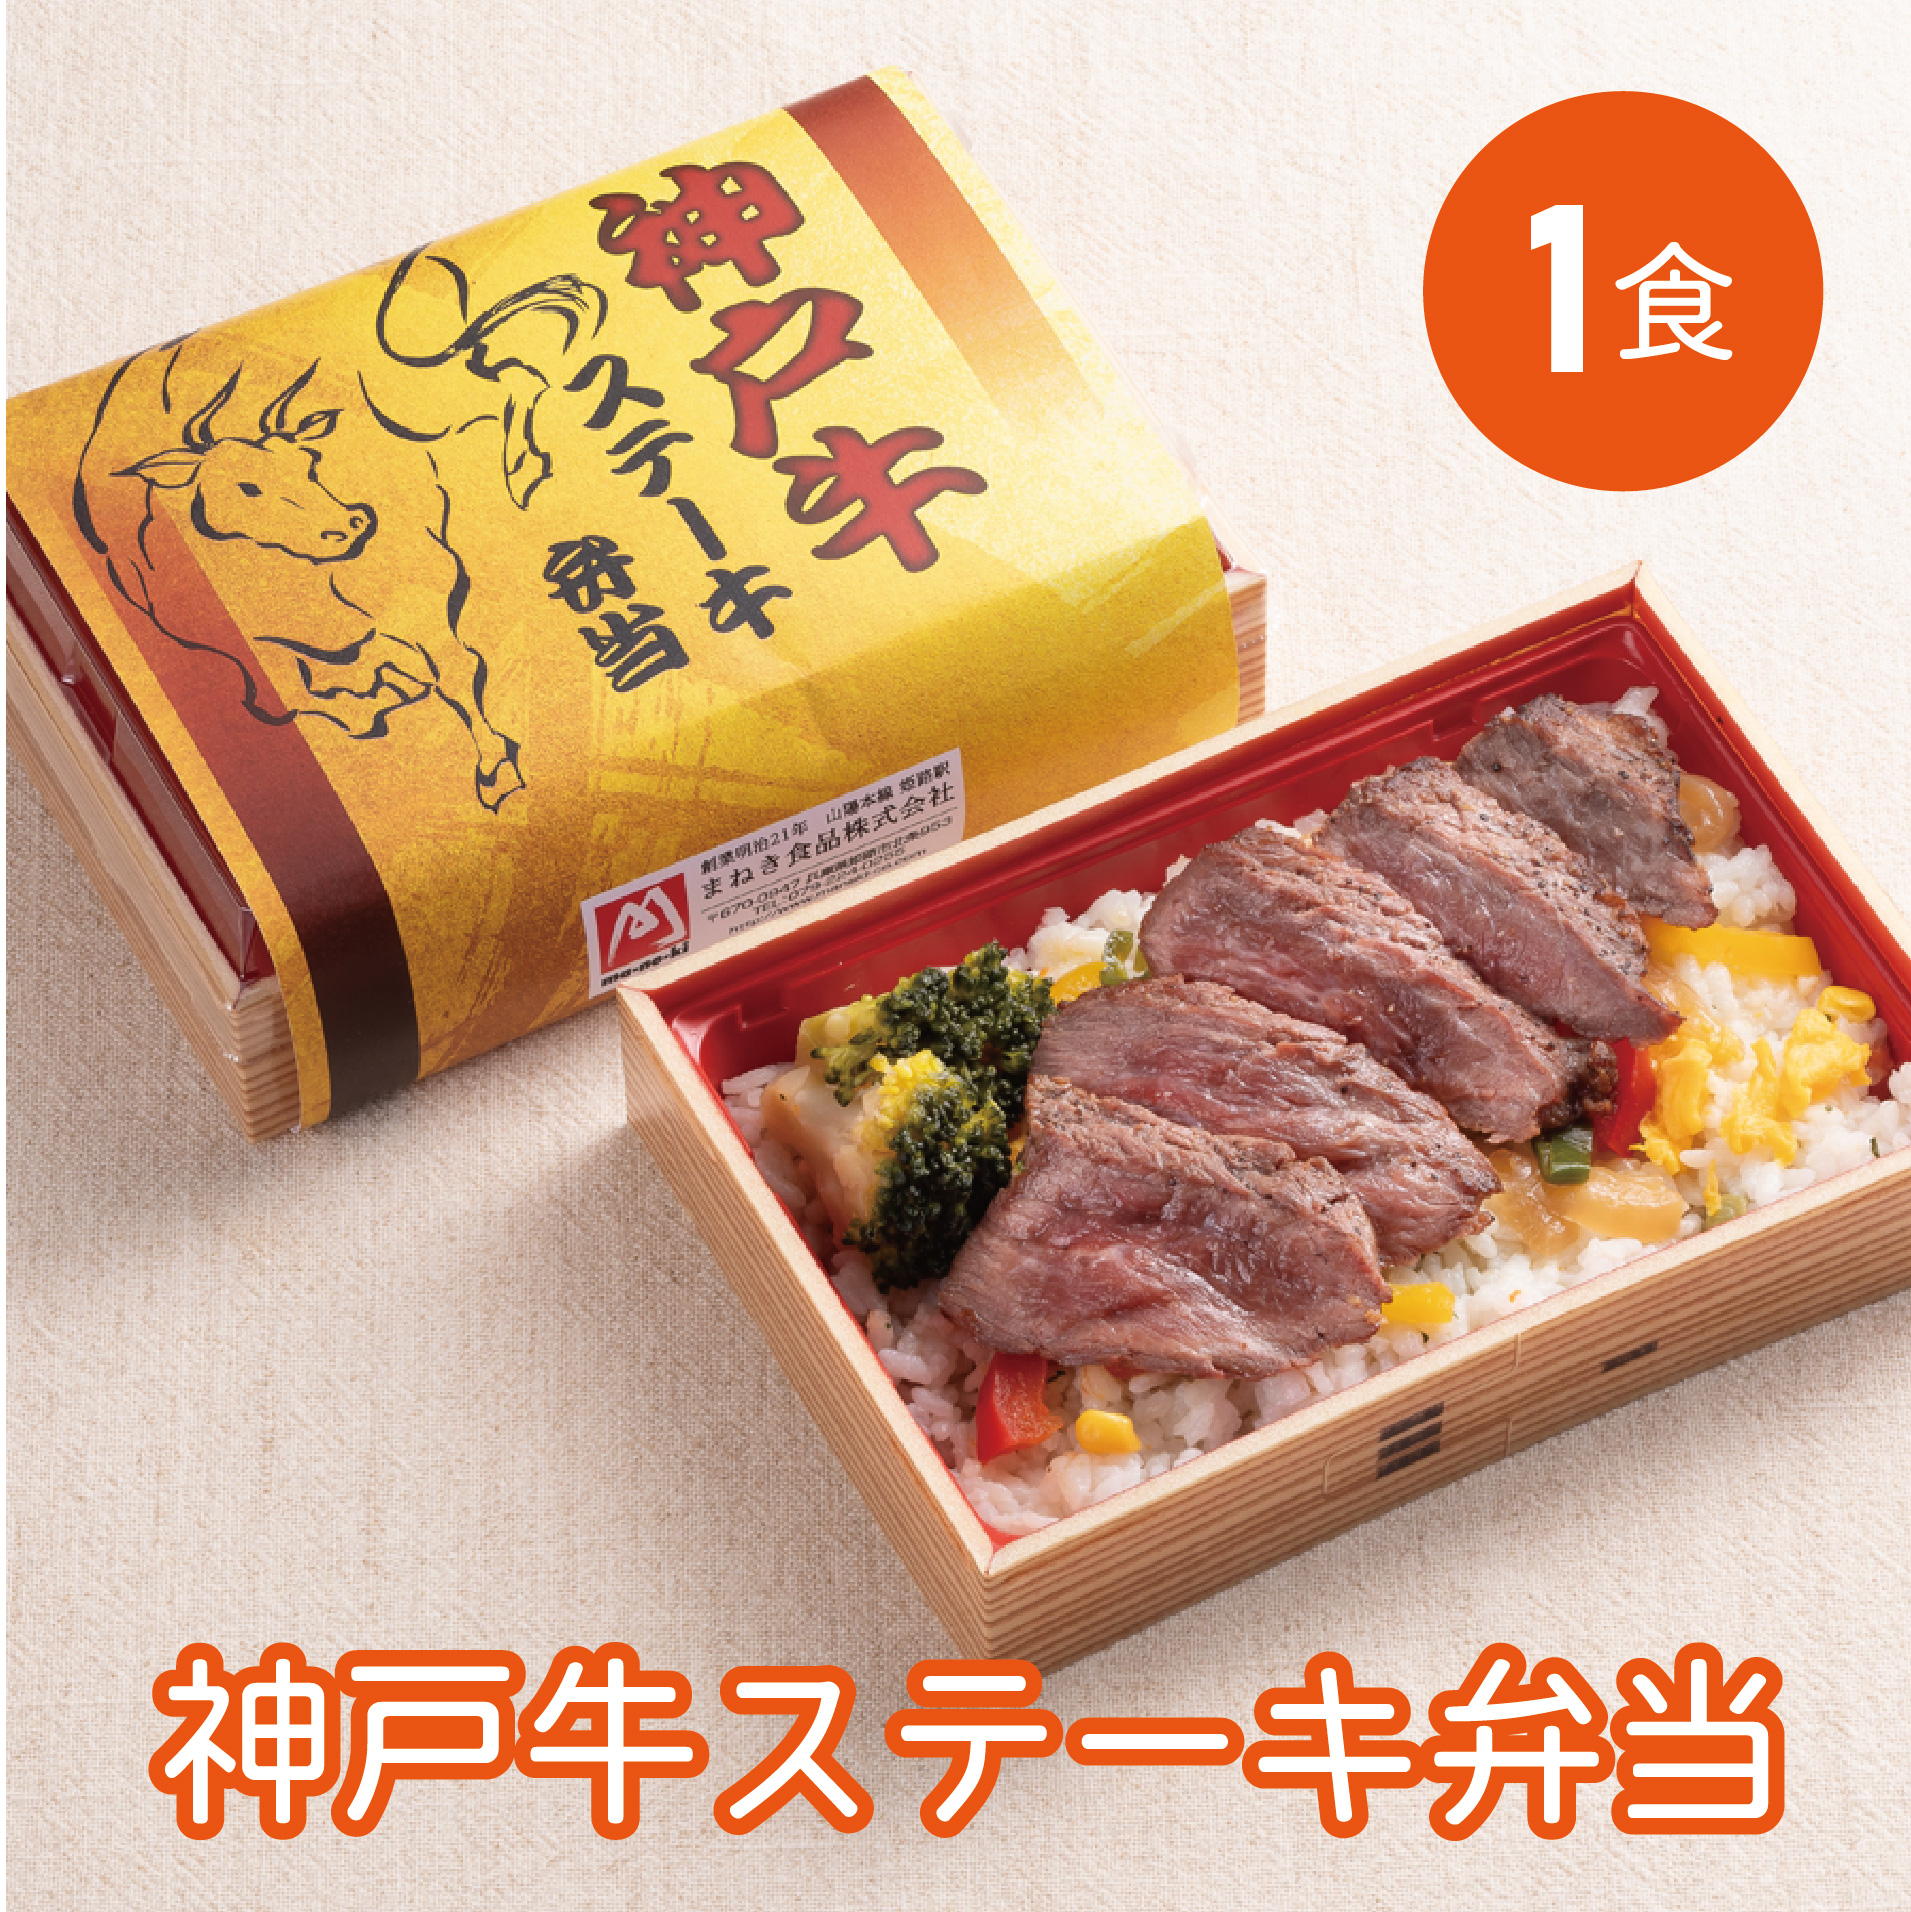 【冷凍便】神戸牛ステーキ弁当 1食